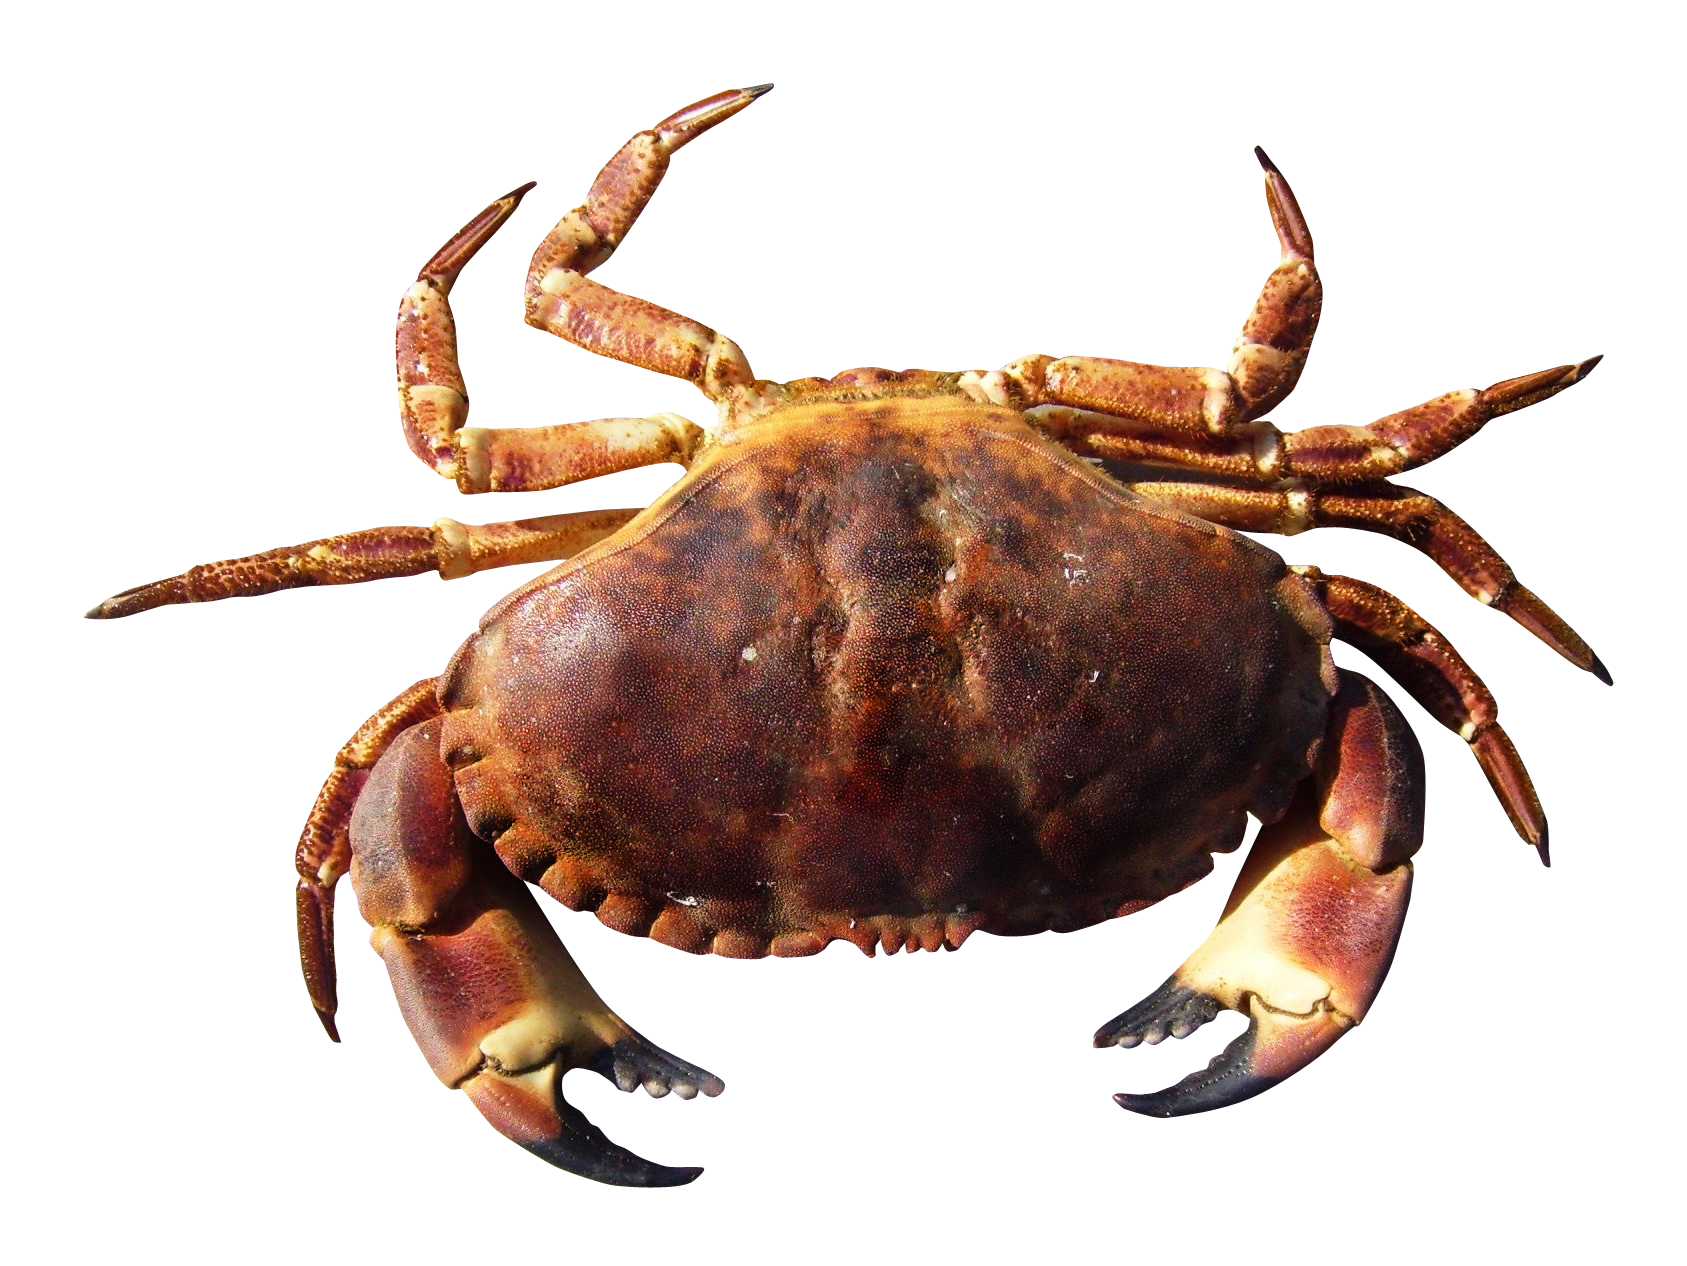 Crab Image PNG HD - 126080